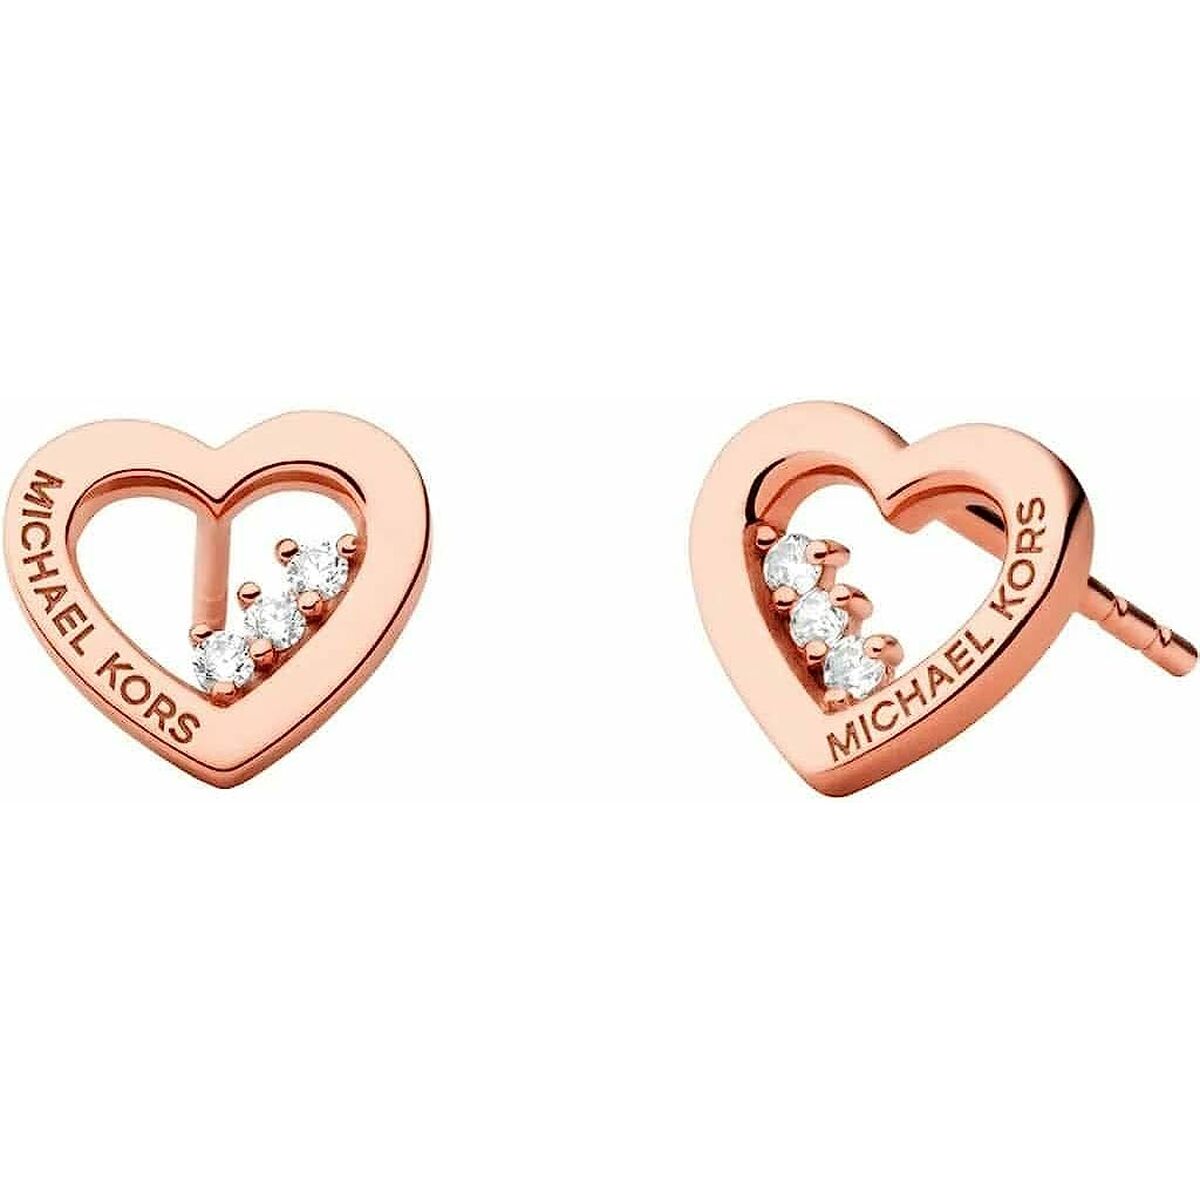 Michael Kors Silver Heart Earrings | eBay